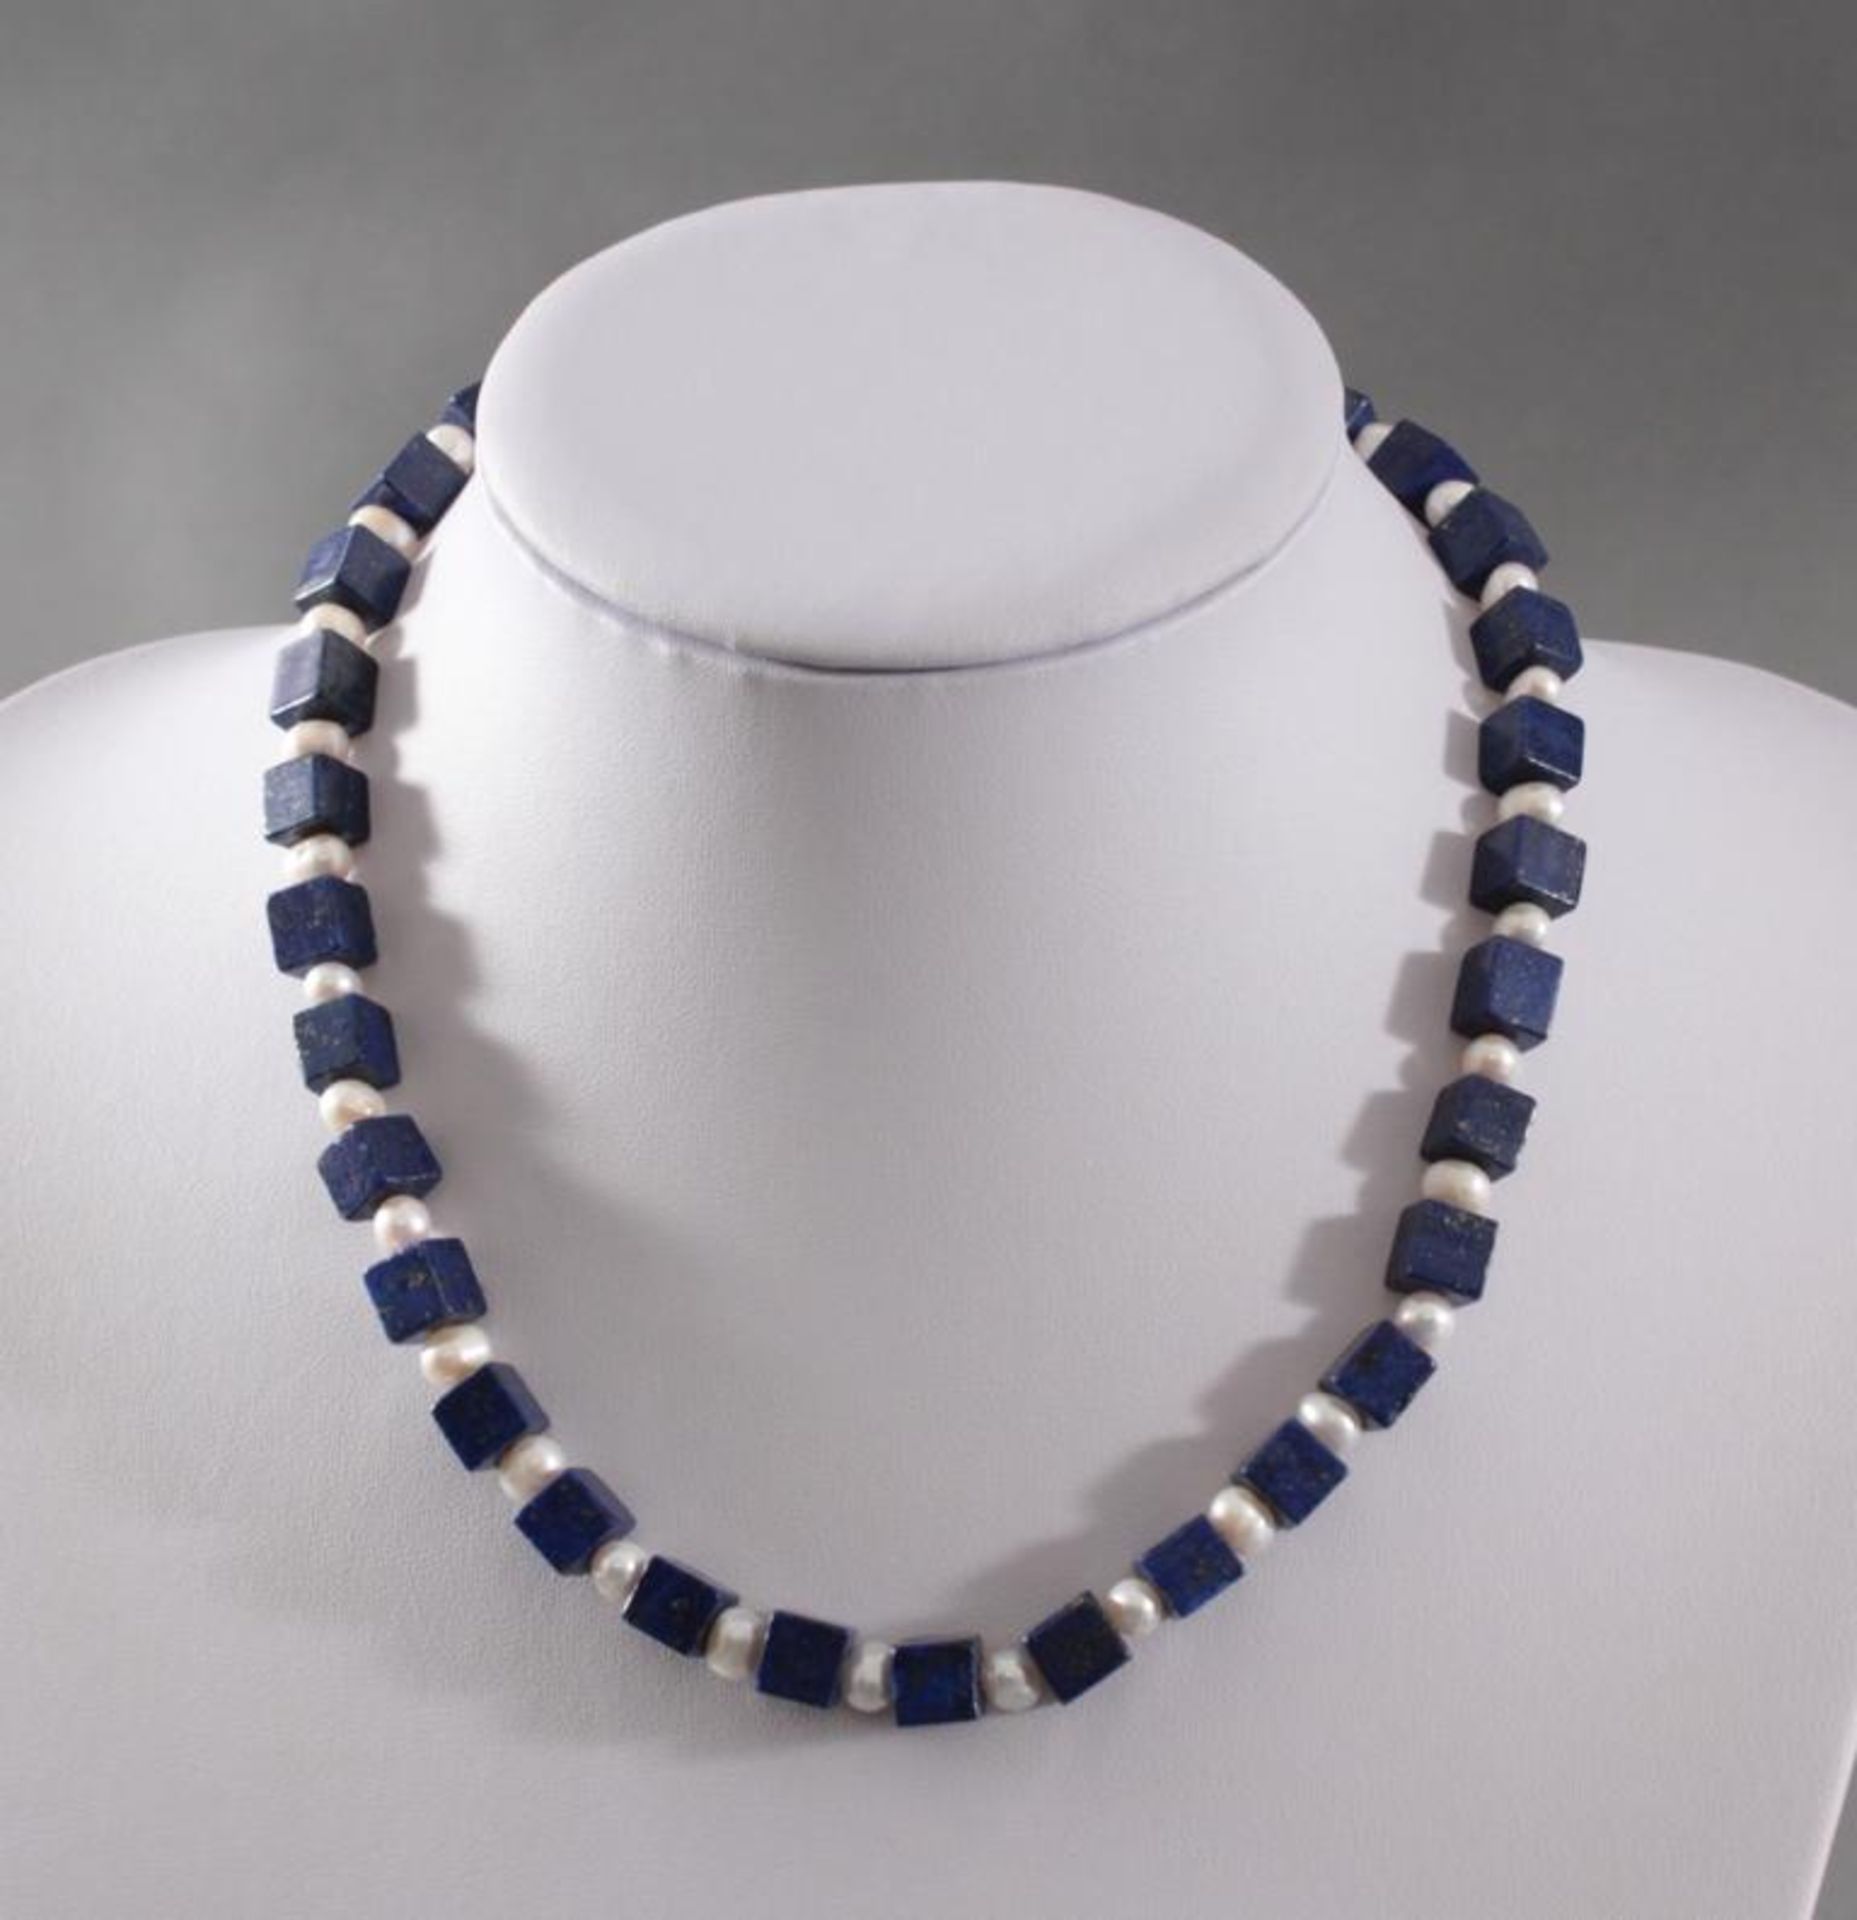 Halskette mit Lapislazuli Steinen und Frischwasser PerlenKarabiner-Verschluss aus Sterling Silber,